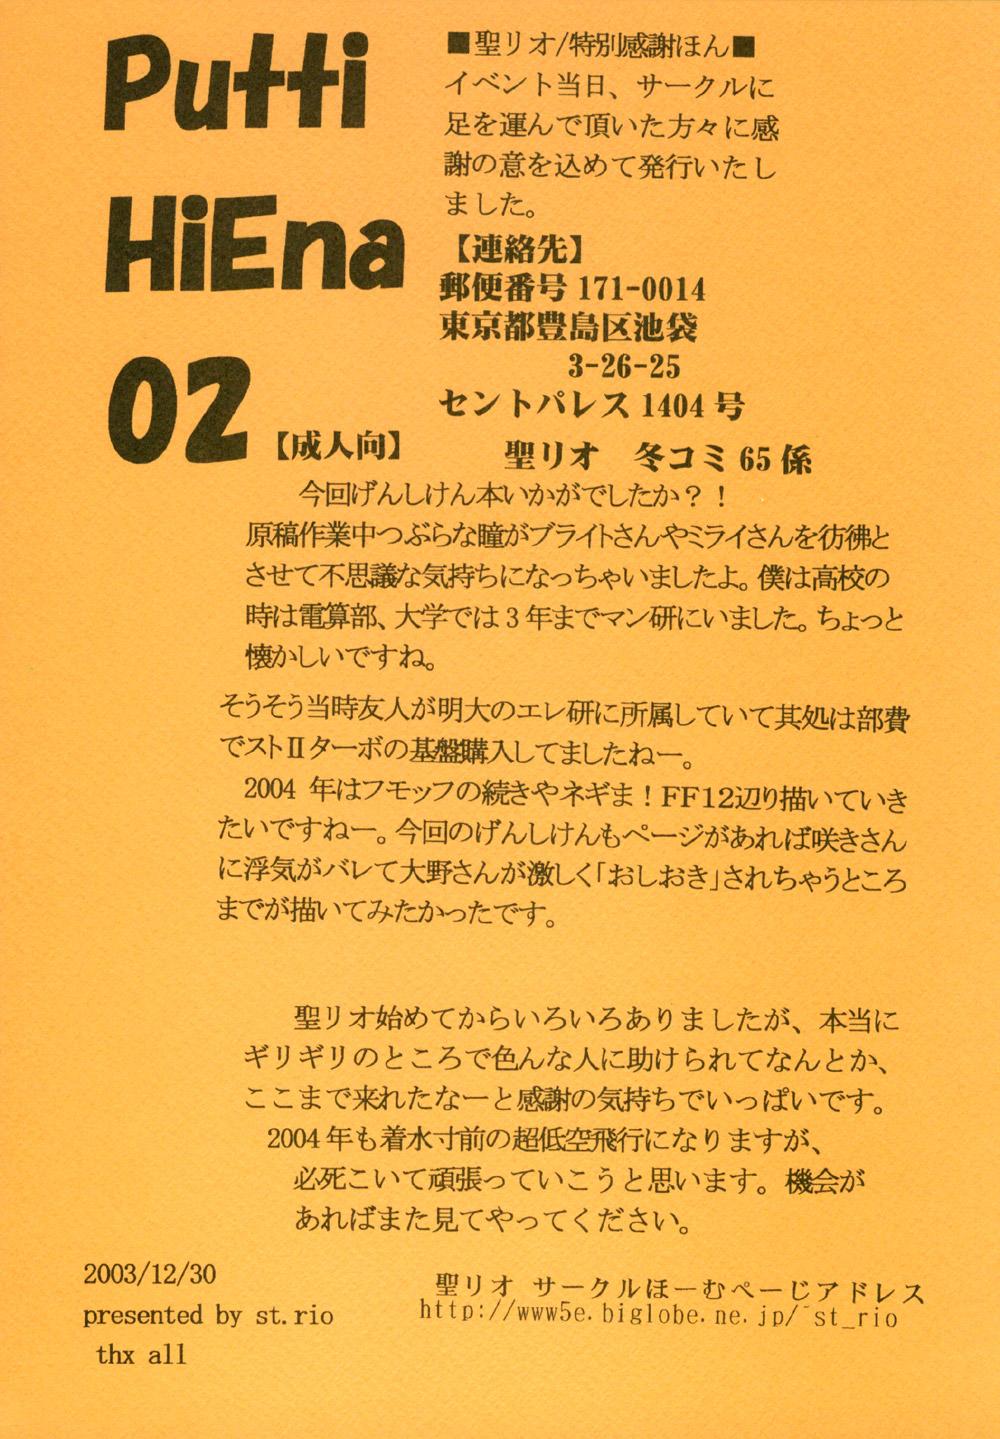 Full Movie Putti HiEna 02 - Genshiken Pink - Page 25